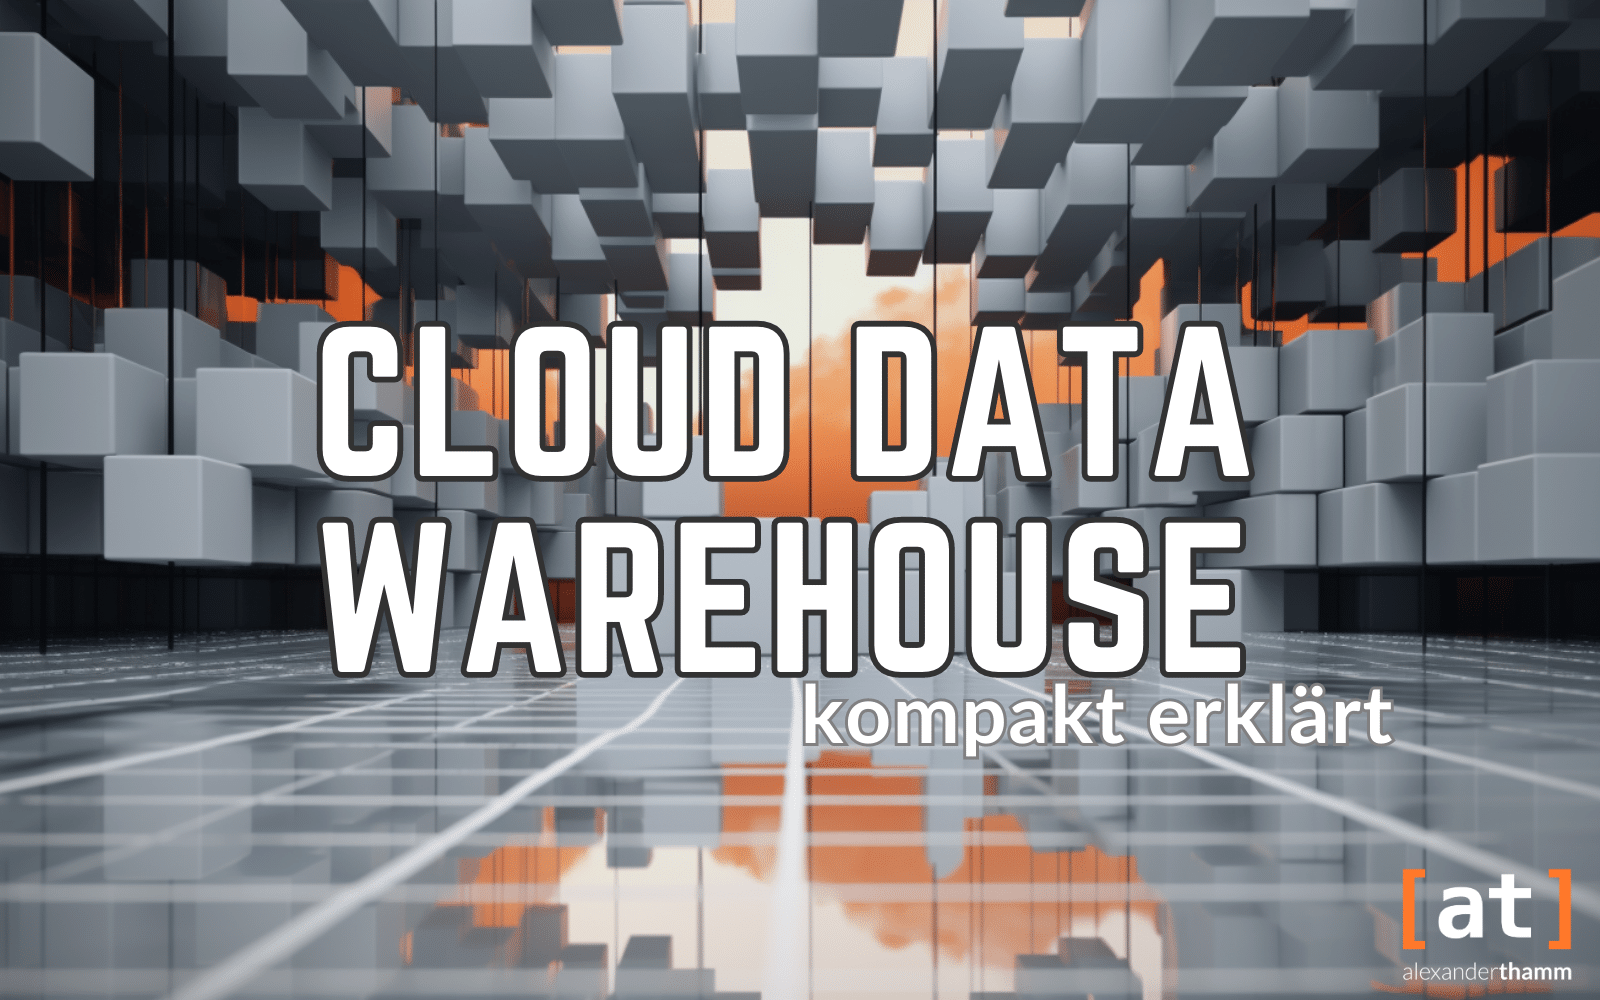 Cloud Data Warehouse: kompakt erklärt, ein architektonische Konstruktion aus grauen Blöcken mit einer orangefarbenen Wolke im Hintergrund und einer spiegelnden Glasfläche als Boden im Vordergrund